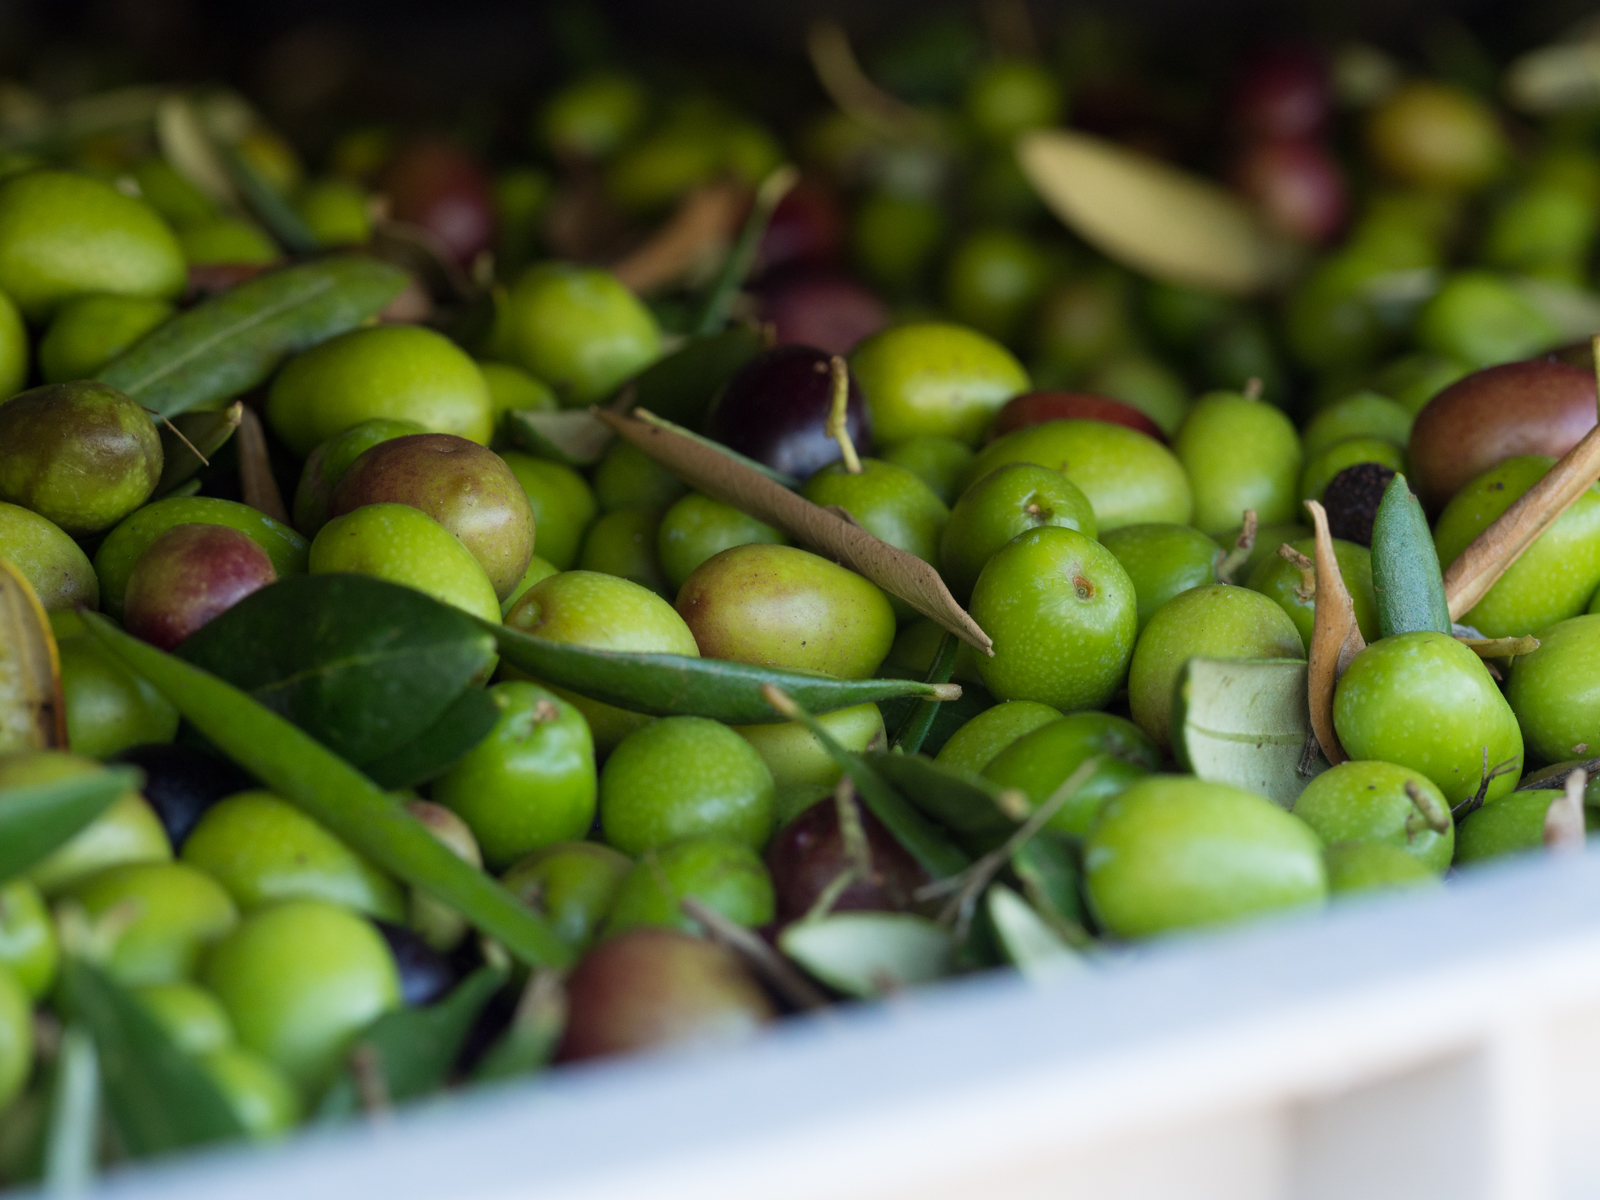 oliwki i oliwa z oliwek to dobre źródło jednonienasyconych kwasów tłuszczowych (MUFA)